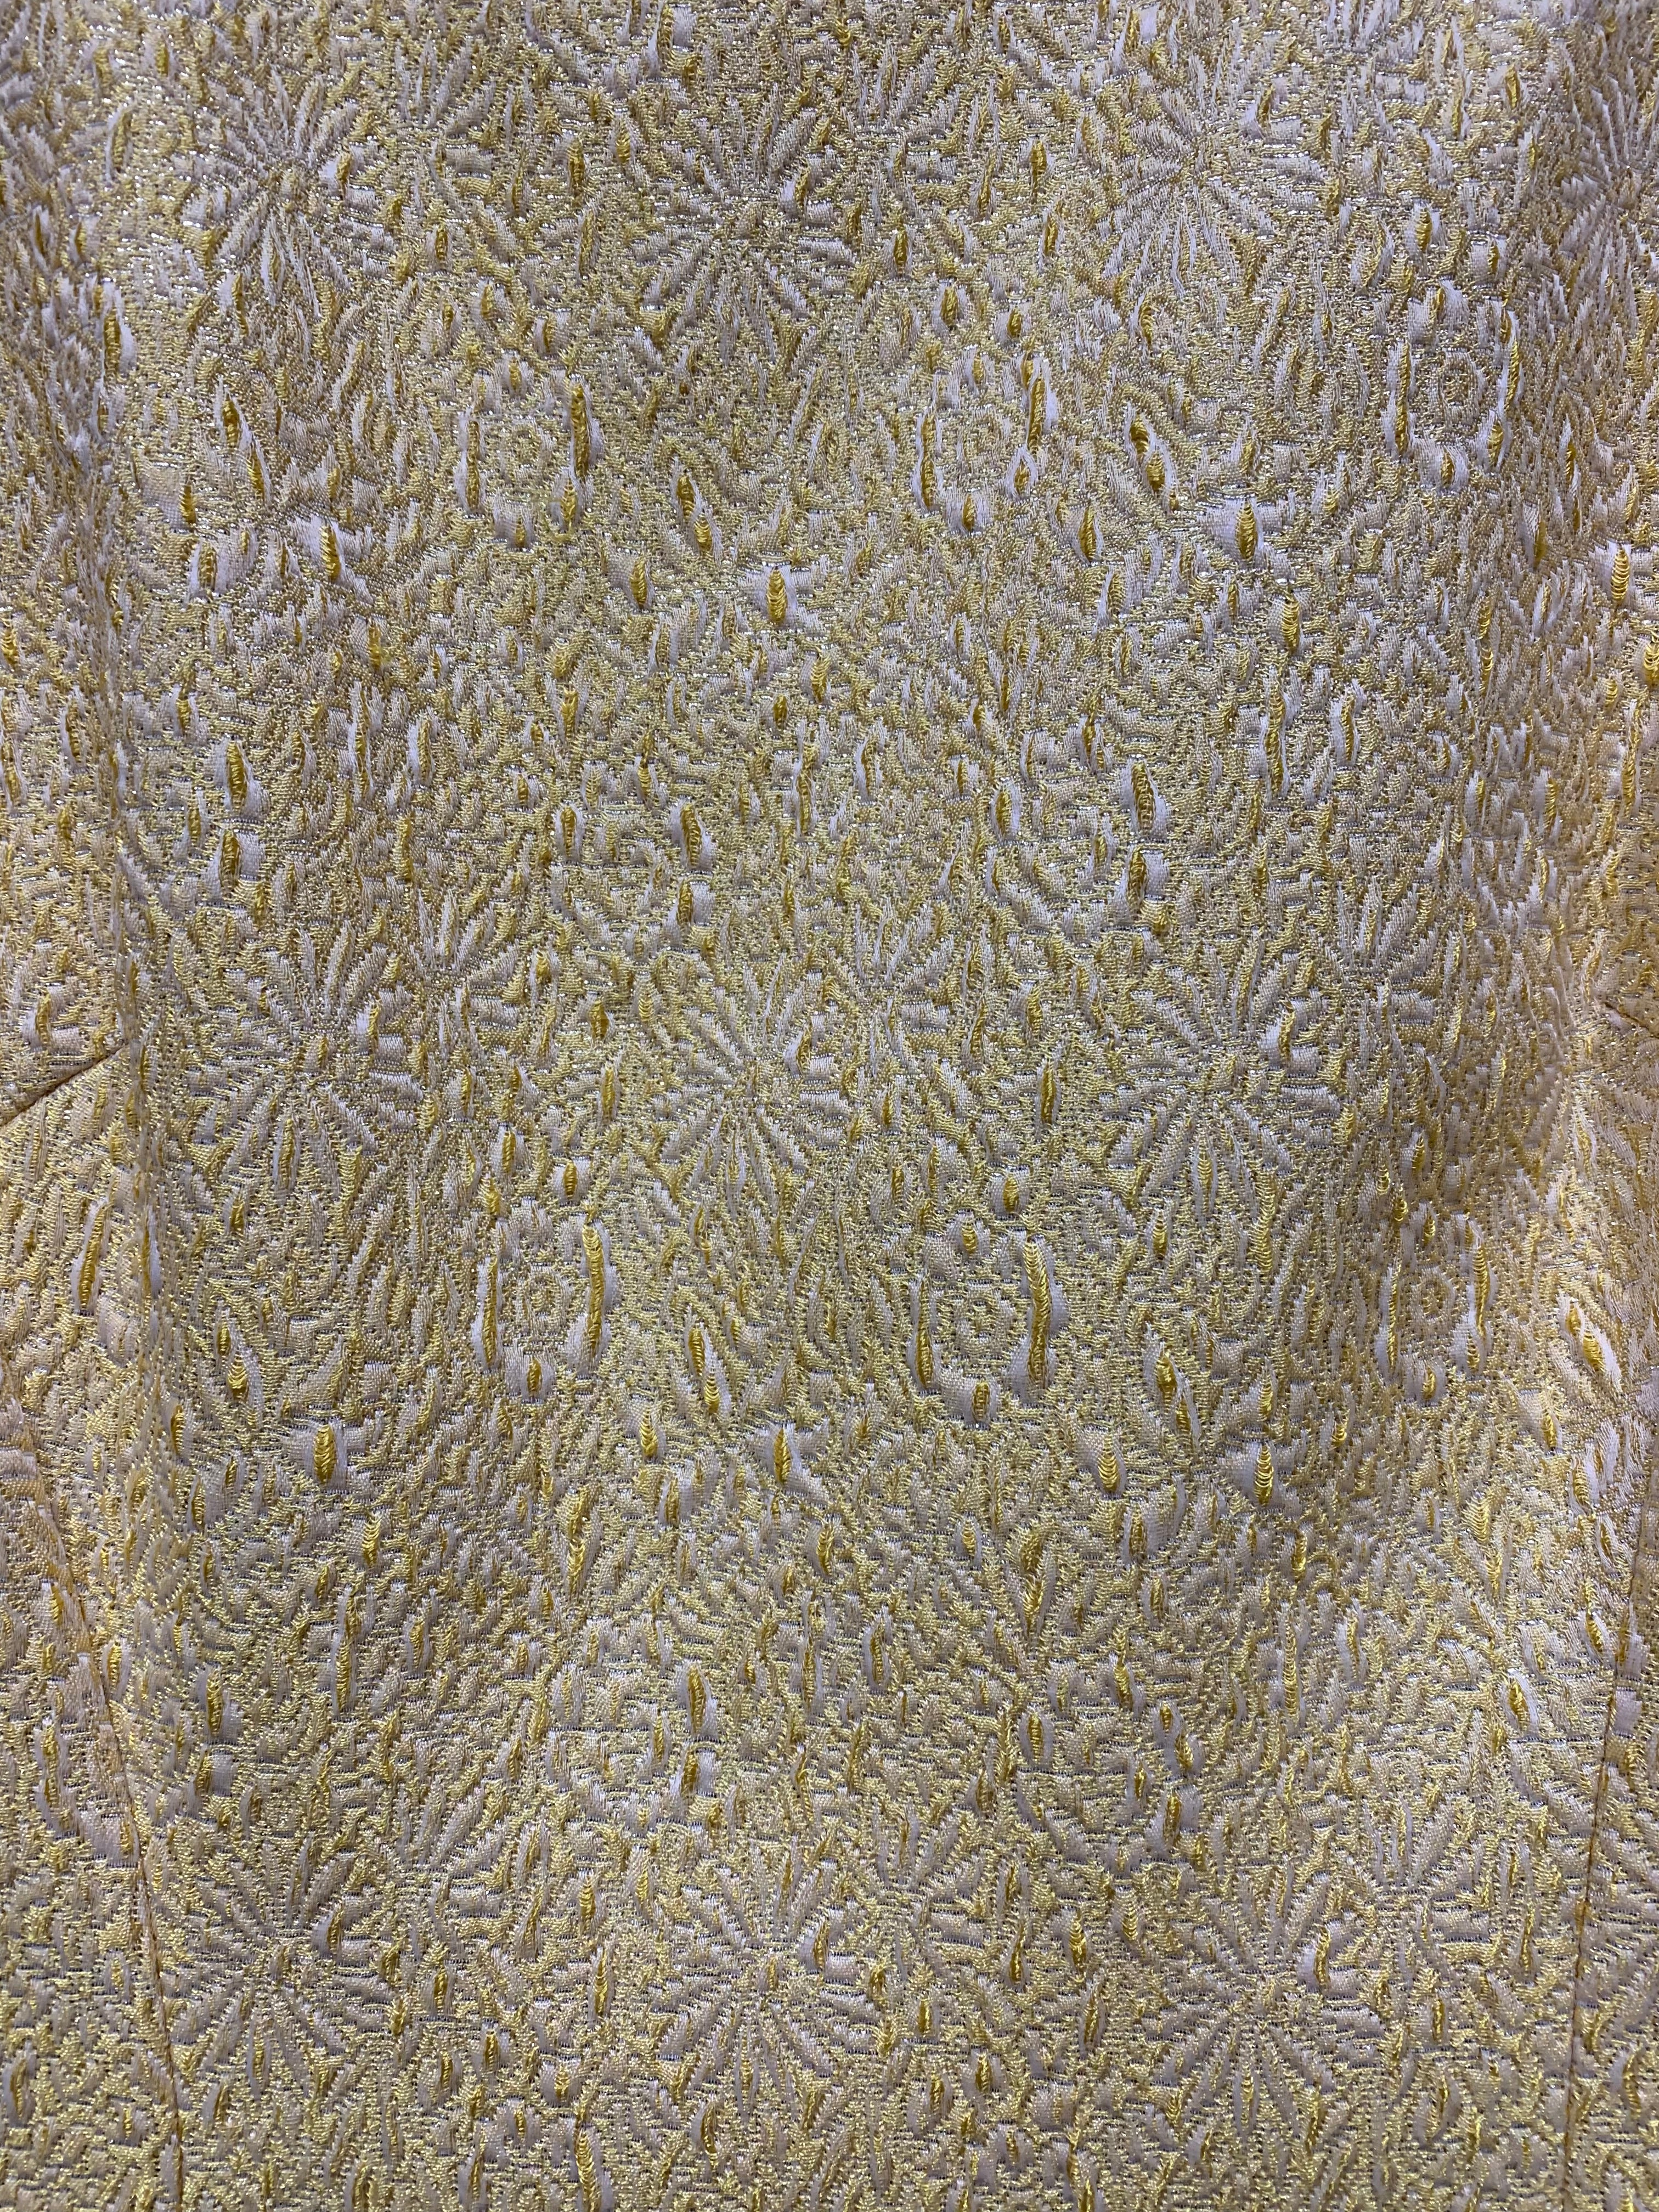 Theia Floral Textured Yellow Sleeveless Sheath Dress